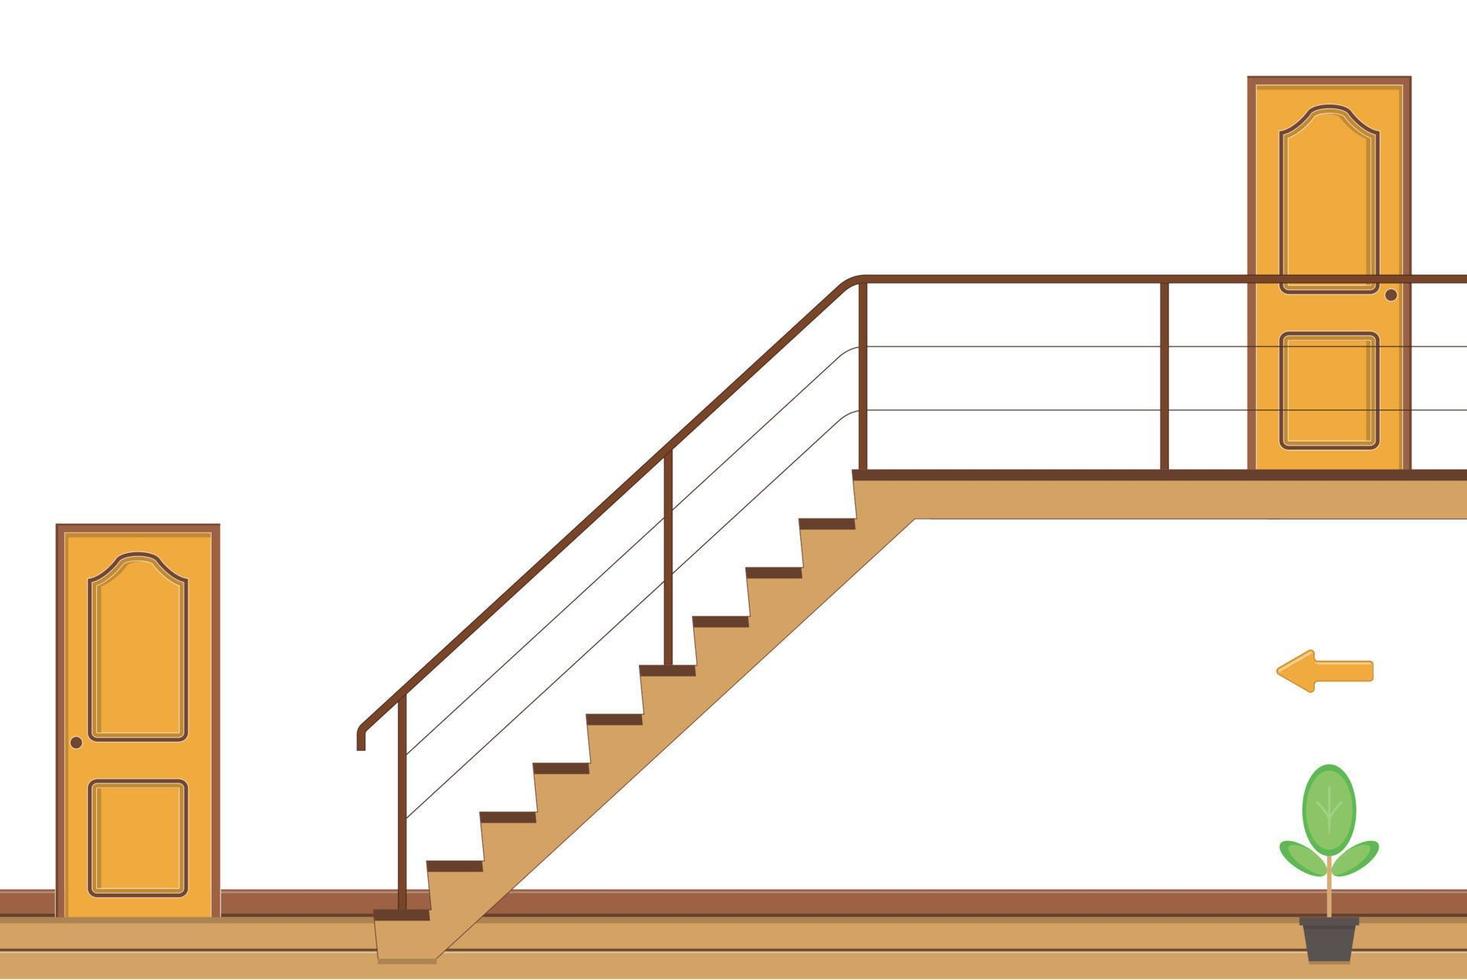 quarto brilhante interior com escadas e duas portas, ilustração vetorial de estilo simples. vetor